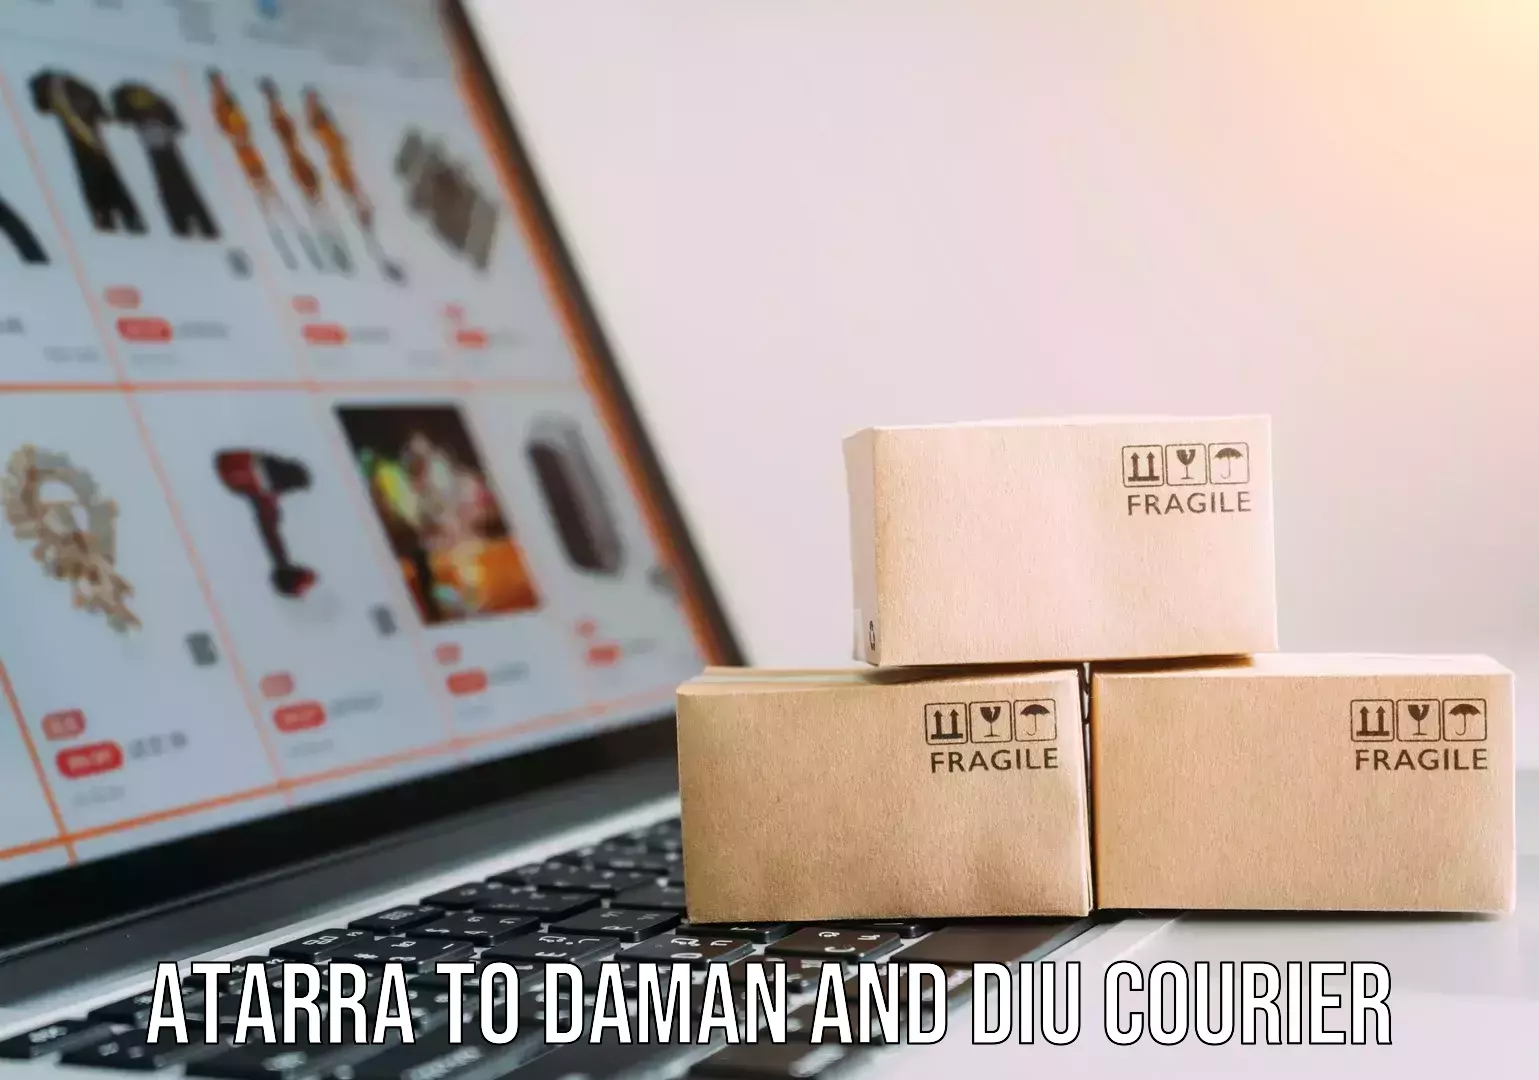 Smart logistics strategies Atarra to Daman and Diu